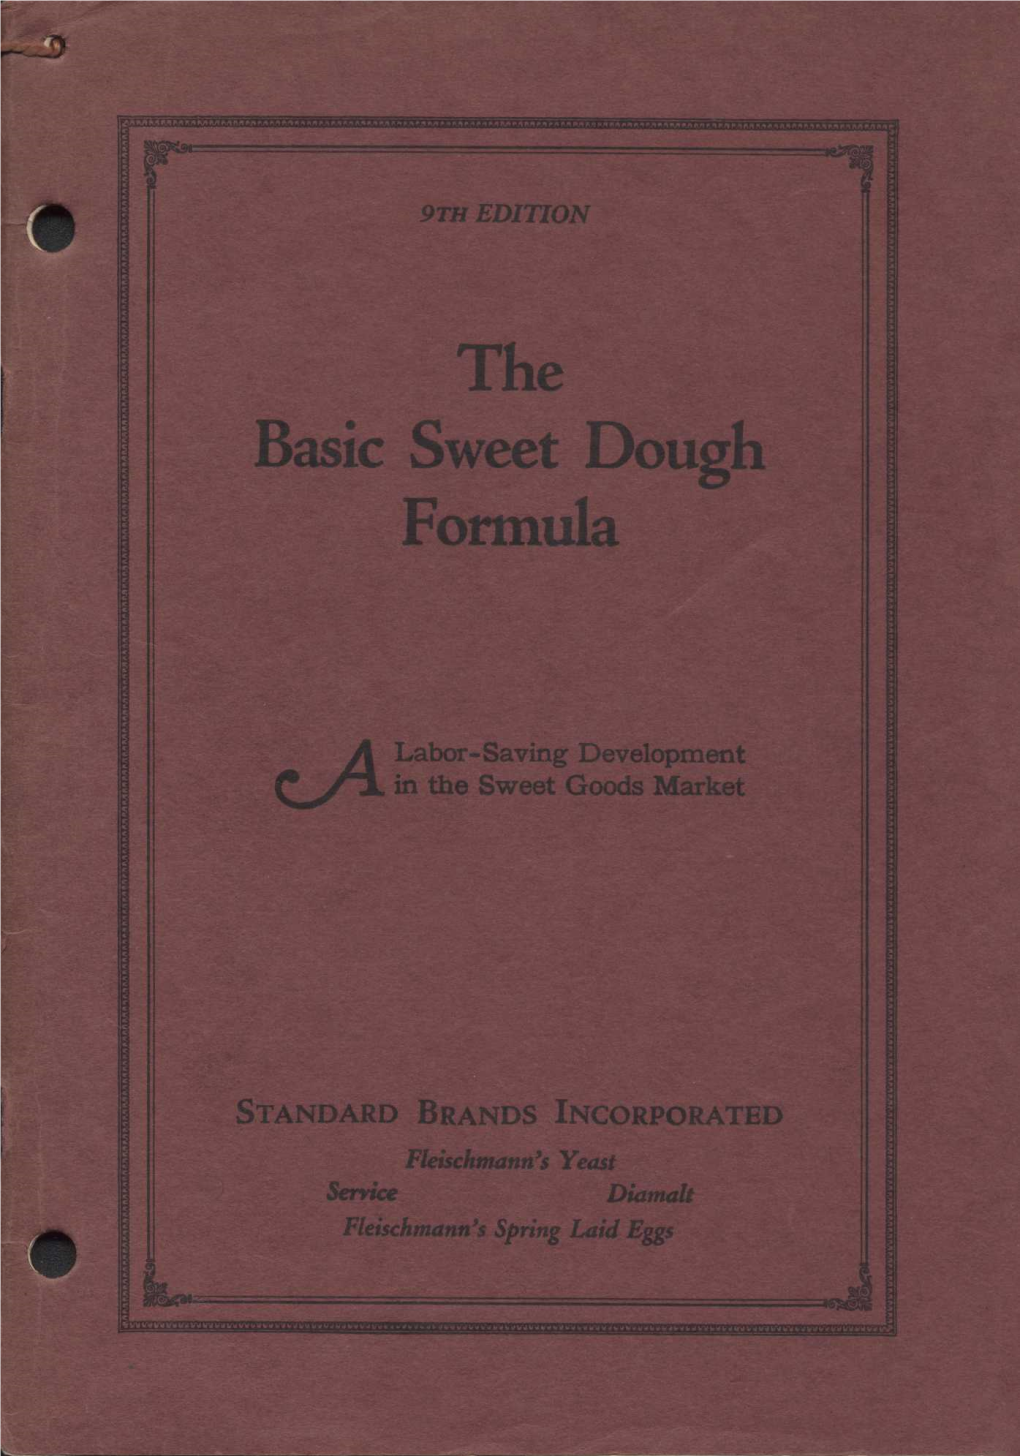 The Basic Sweet Dough Formula